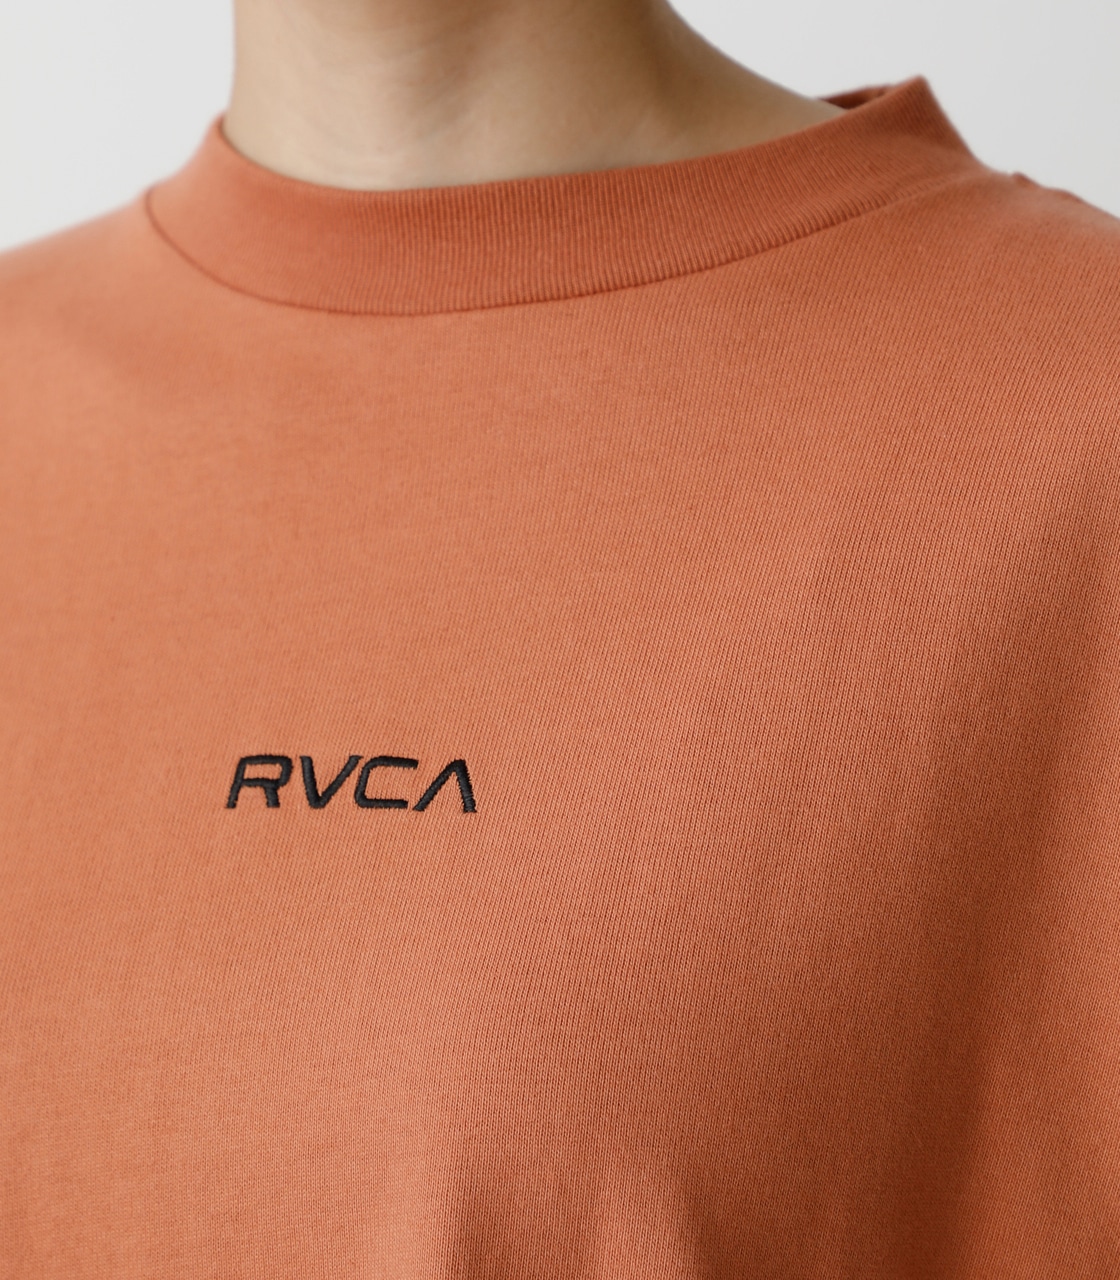 RVCA×AZUL SLEEVE LOGO TEE/RVCA×AZULスリーブロゴTシャツ 詳細画像 ORG 8